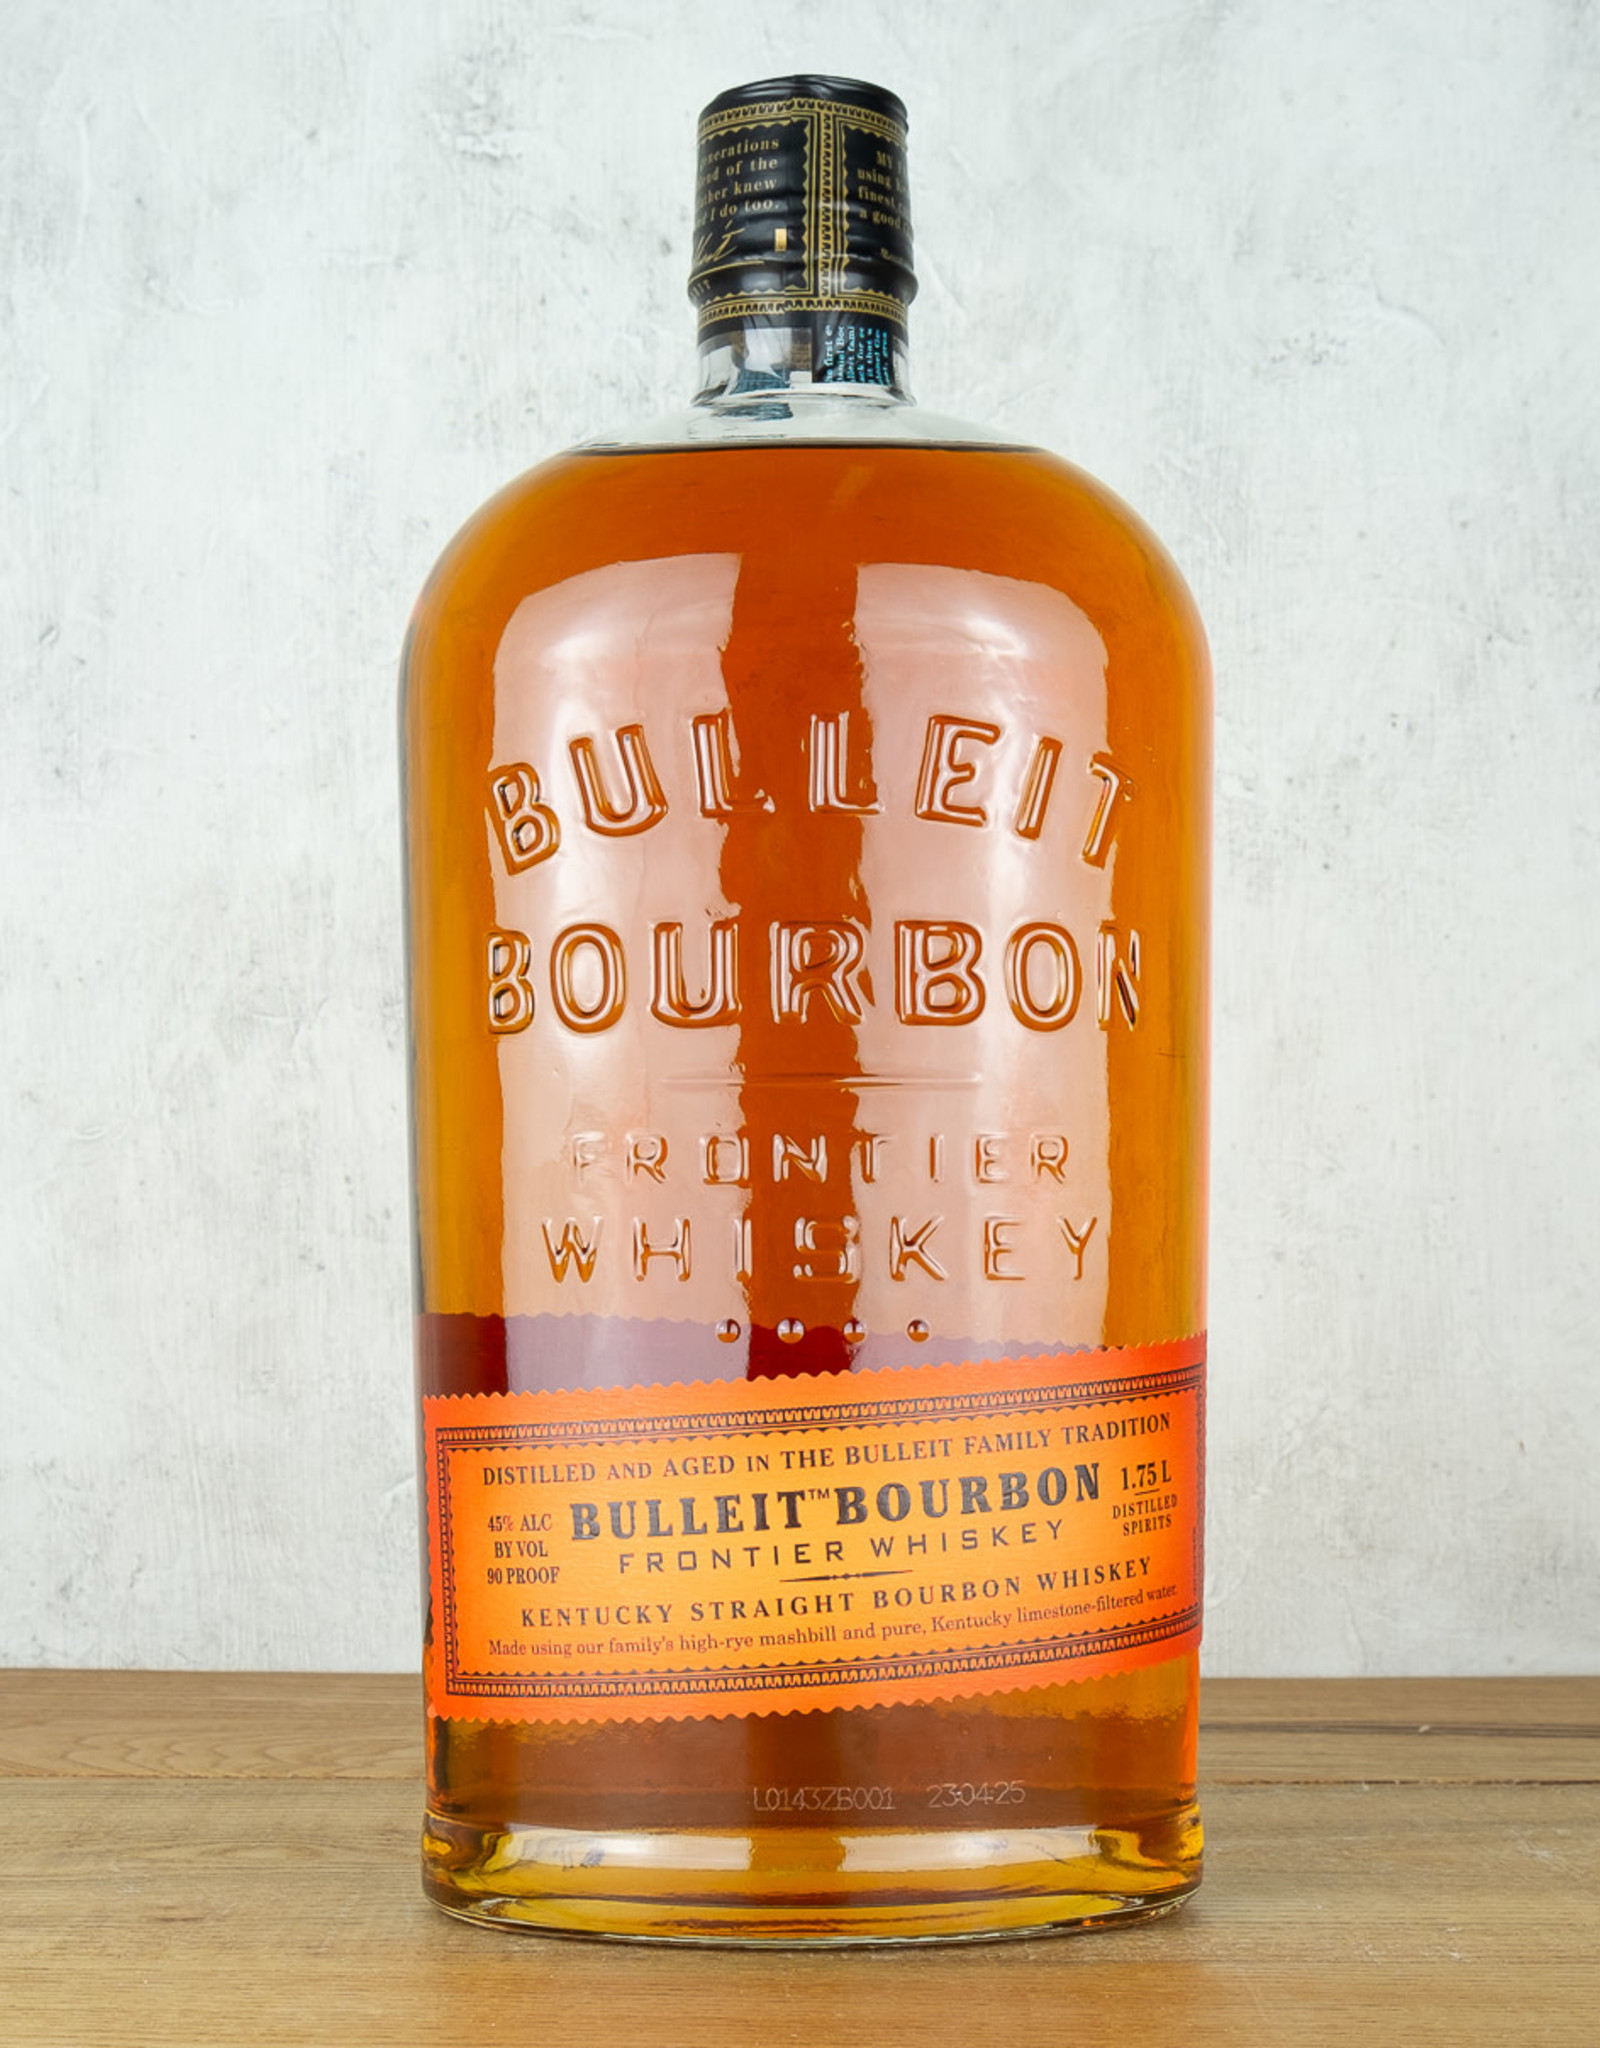 Bulleit Bourbon 1.75